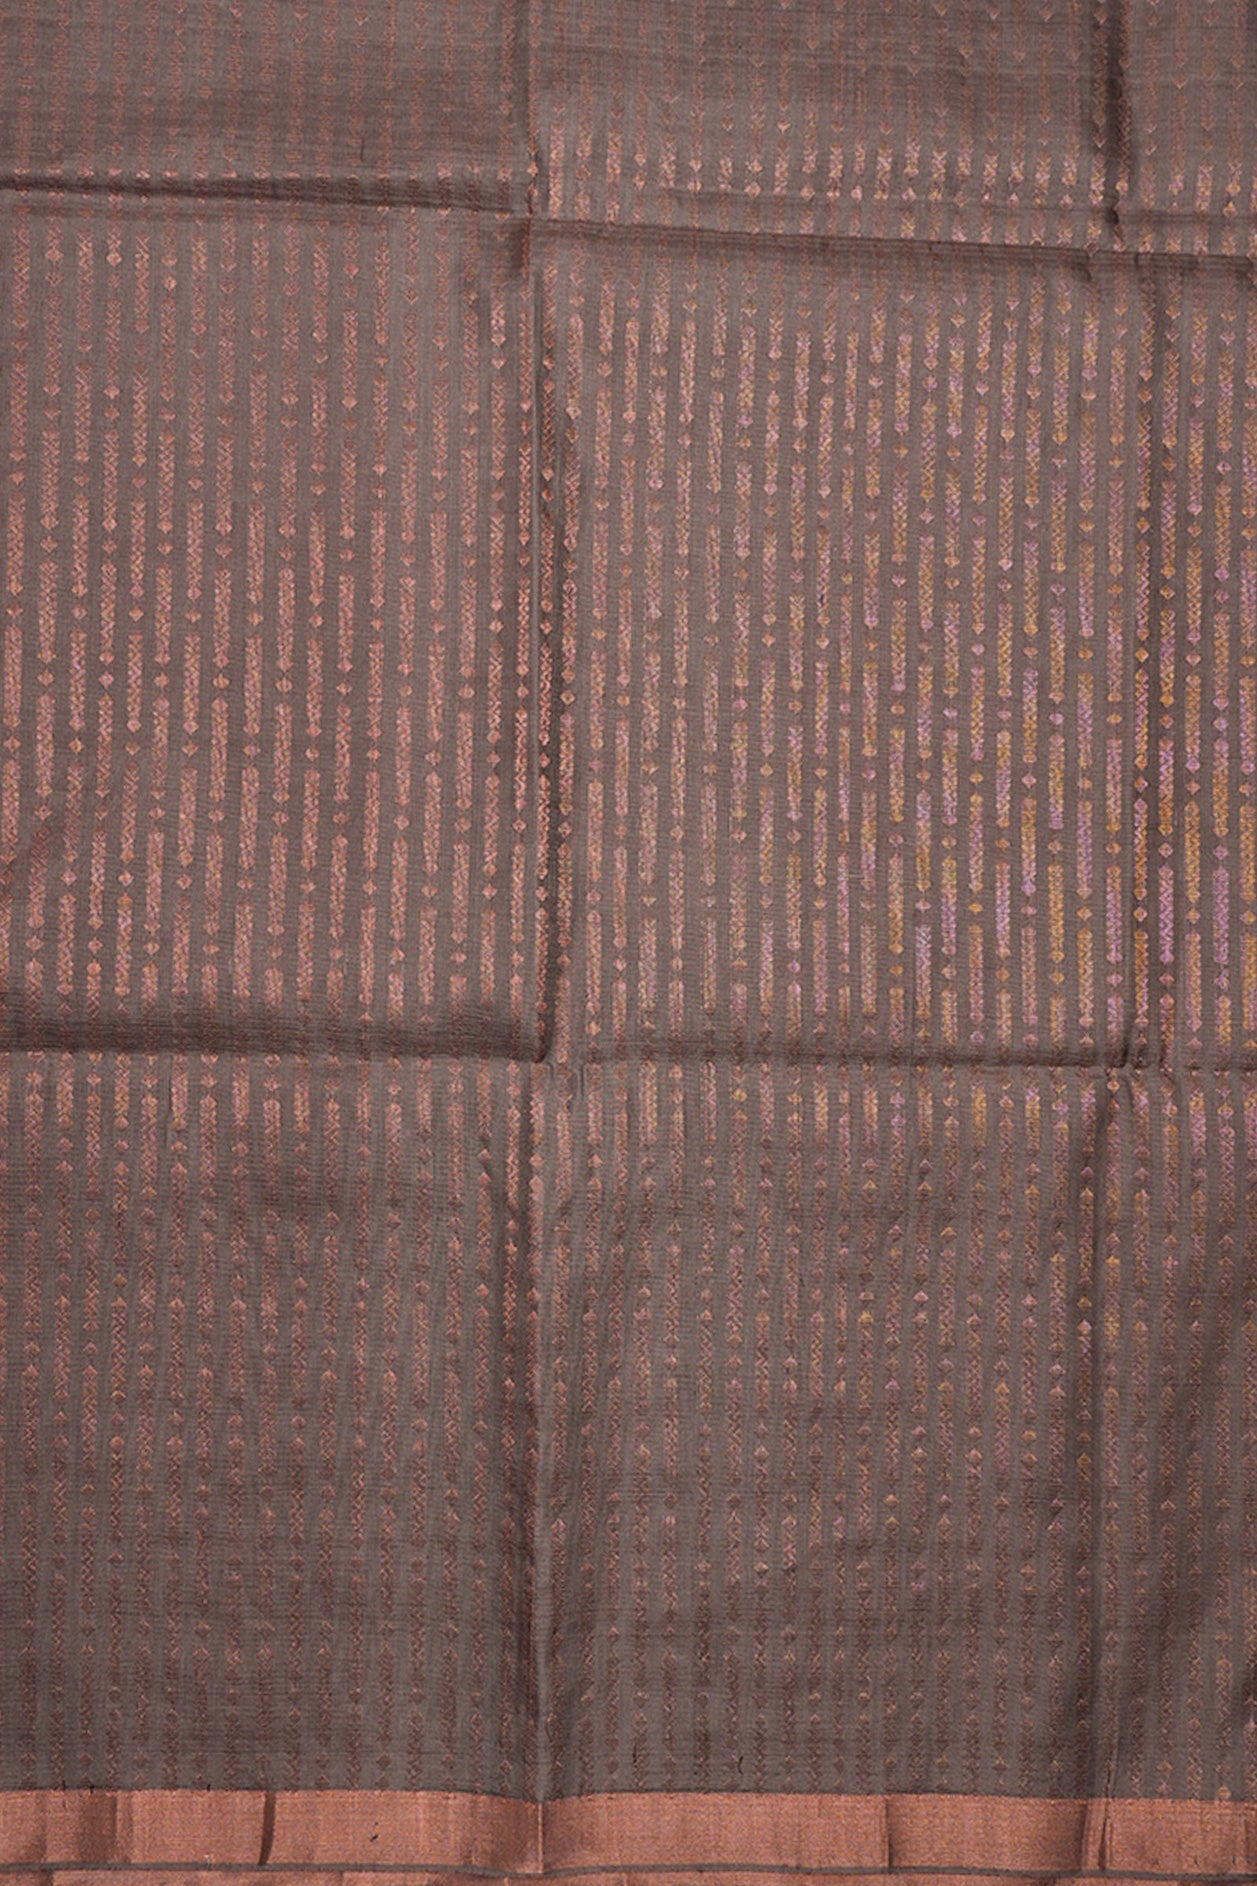 Threadwork Stripes Hot Pink Soft Silk Saree